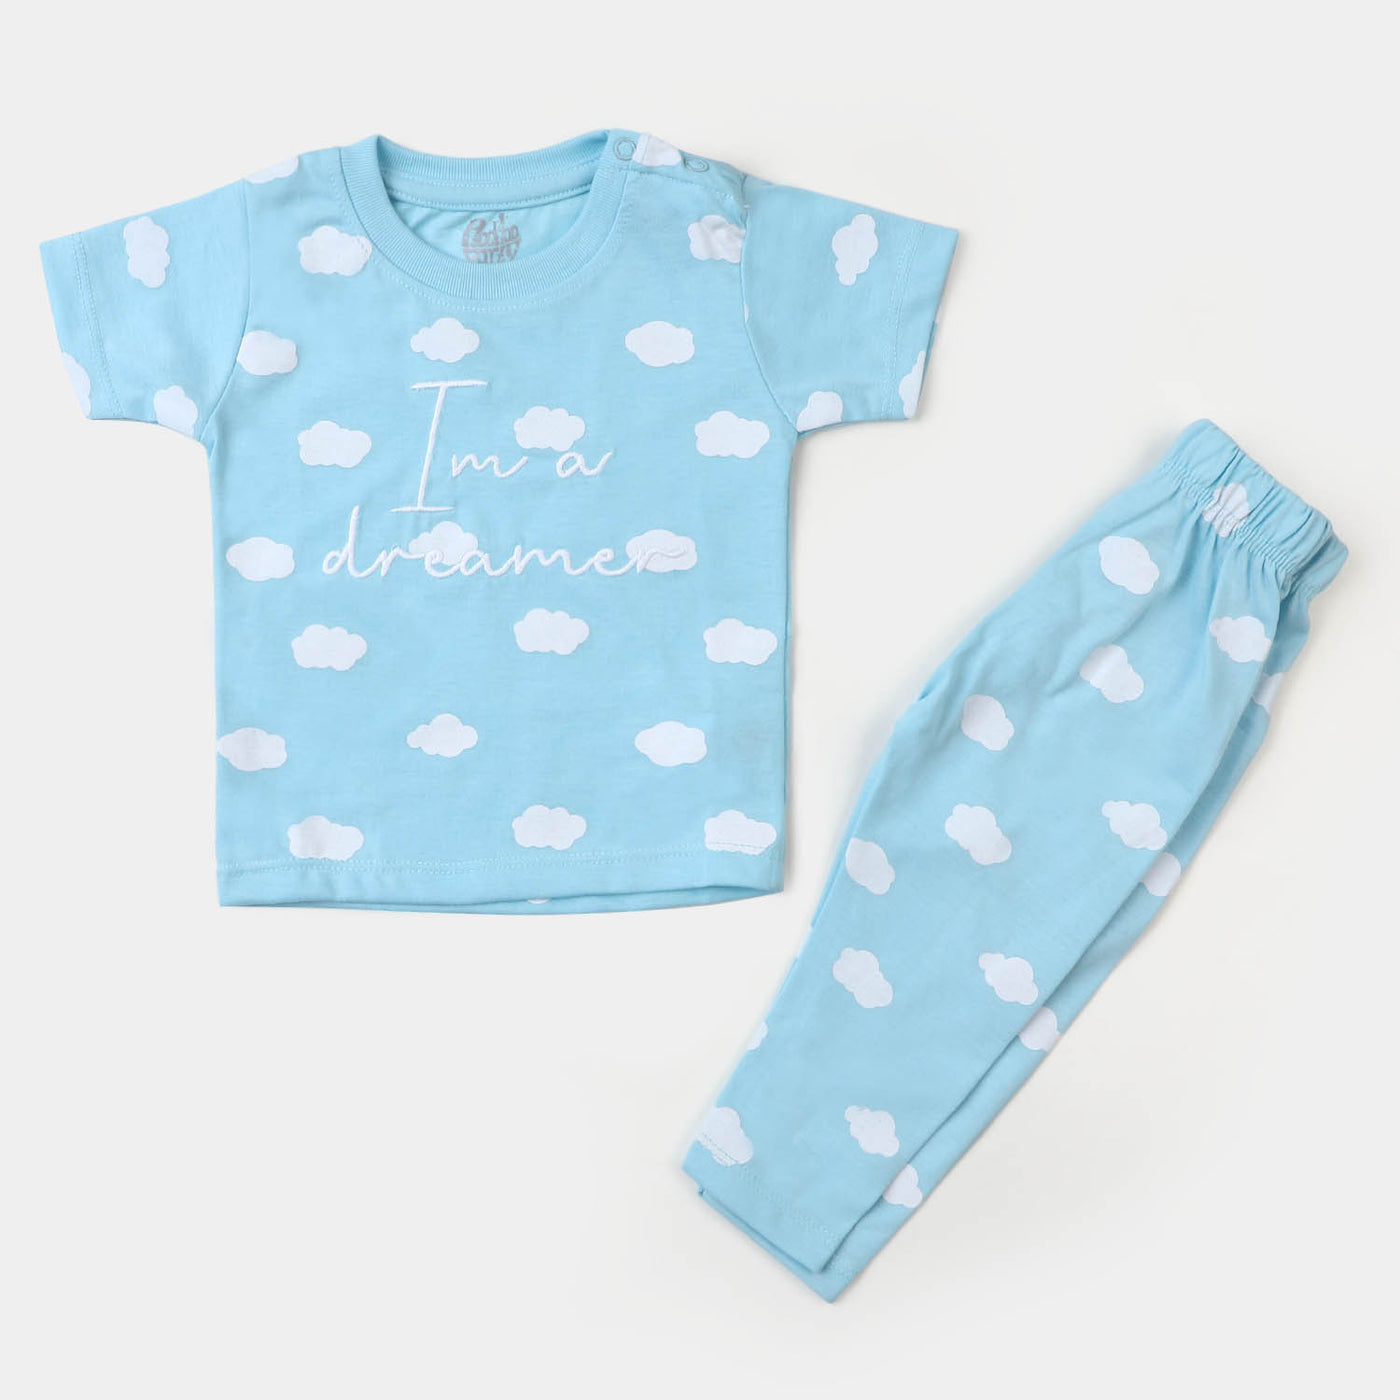 Infant Boys Cotton Night Suit Dreamer - Blue